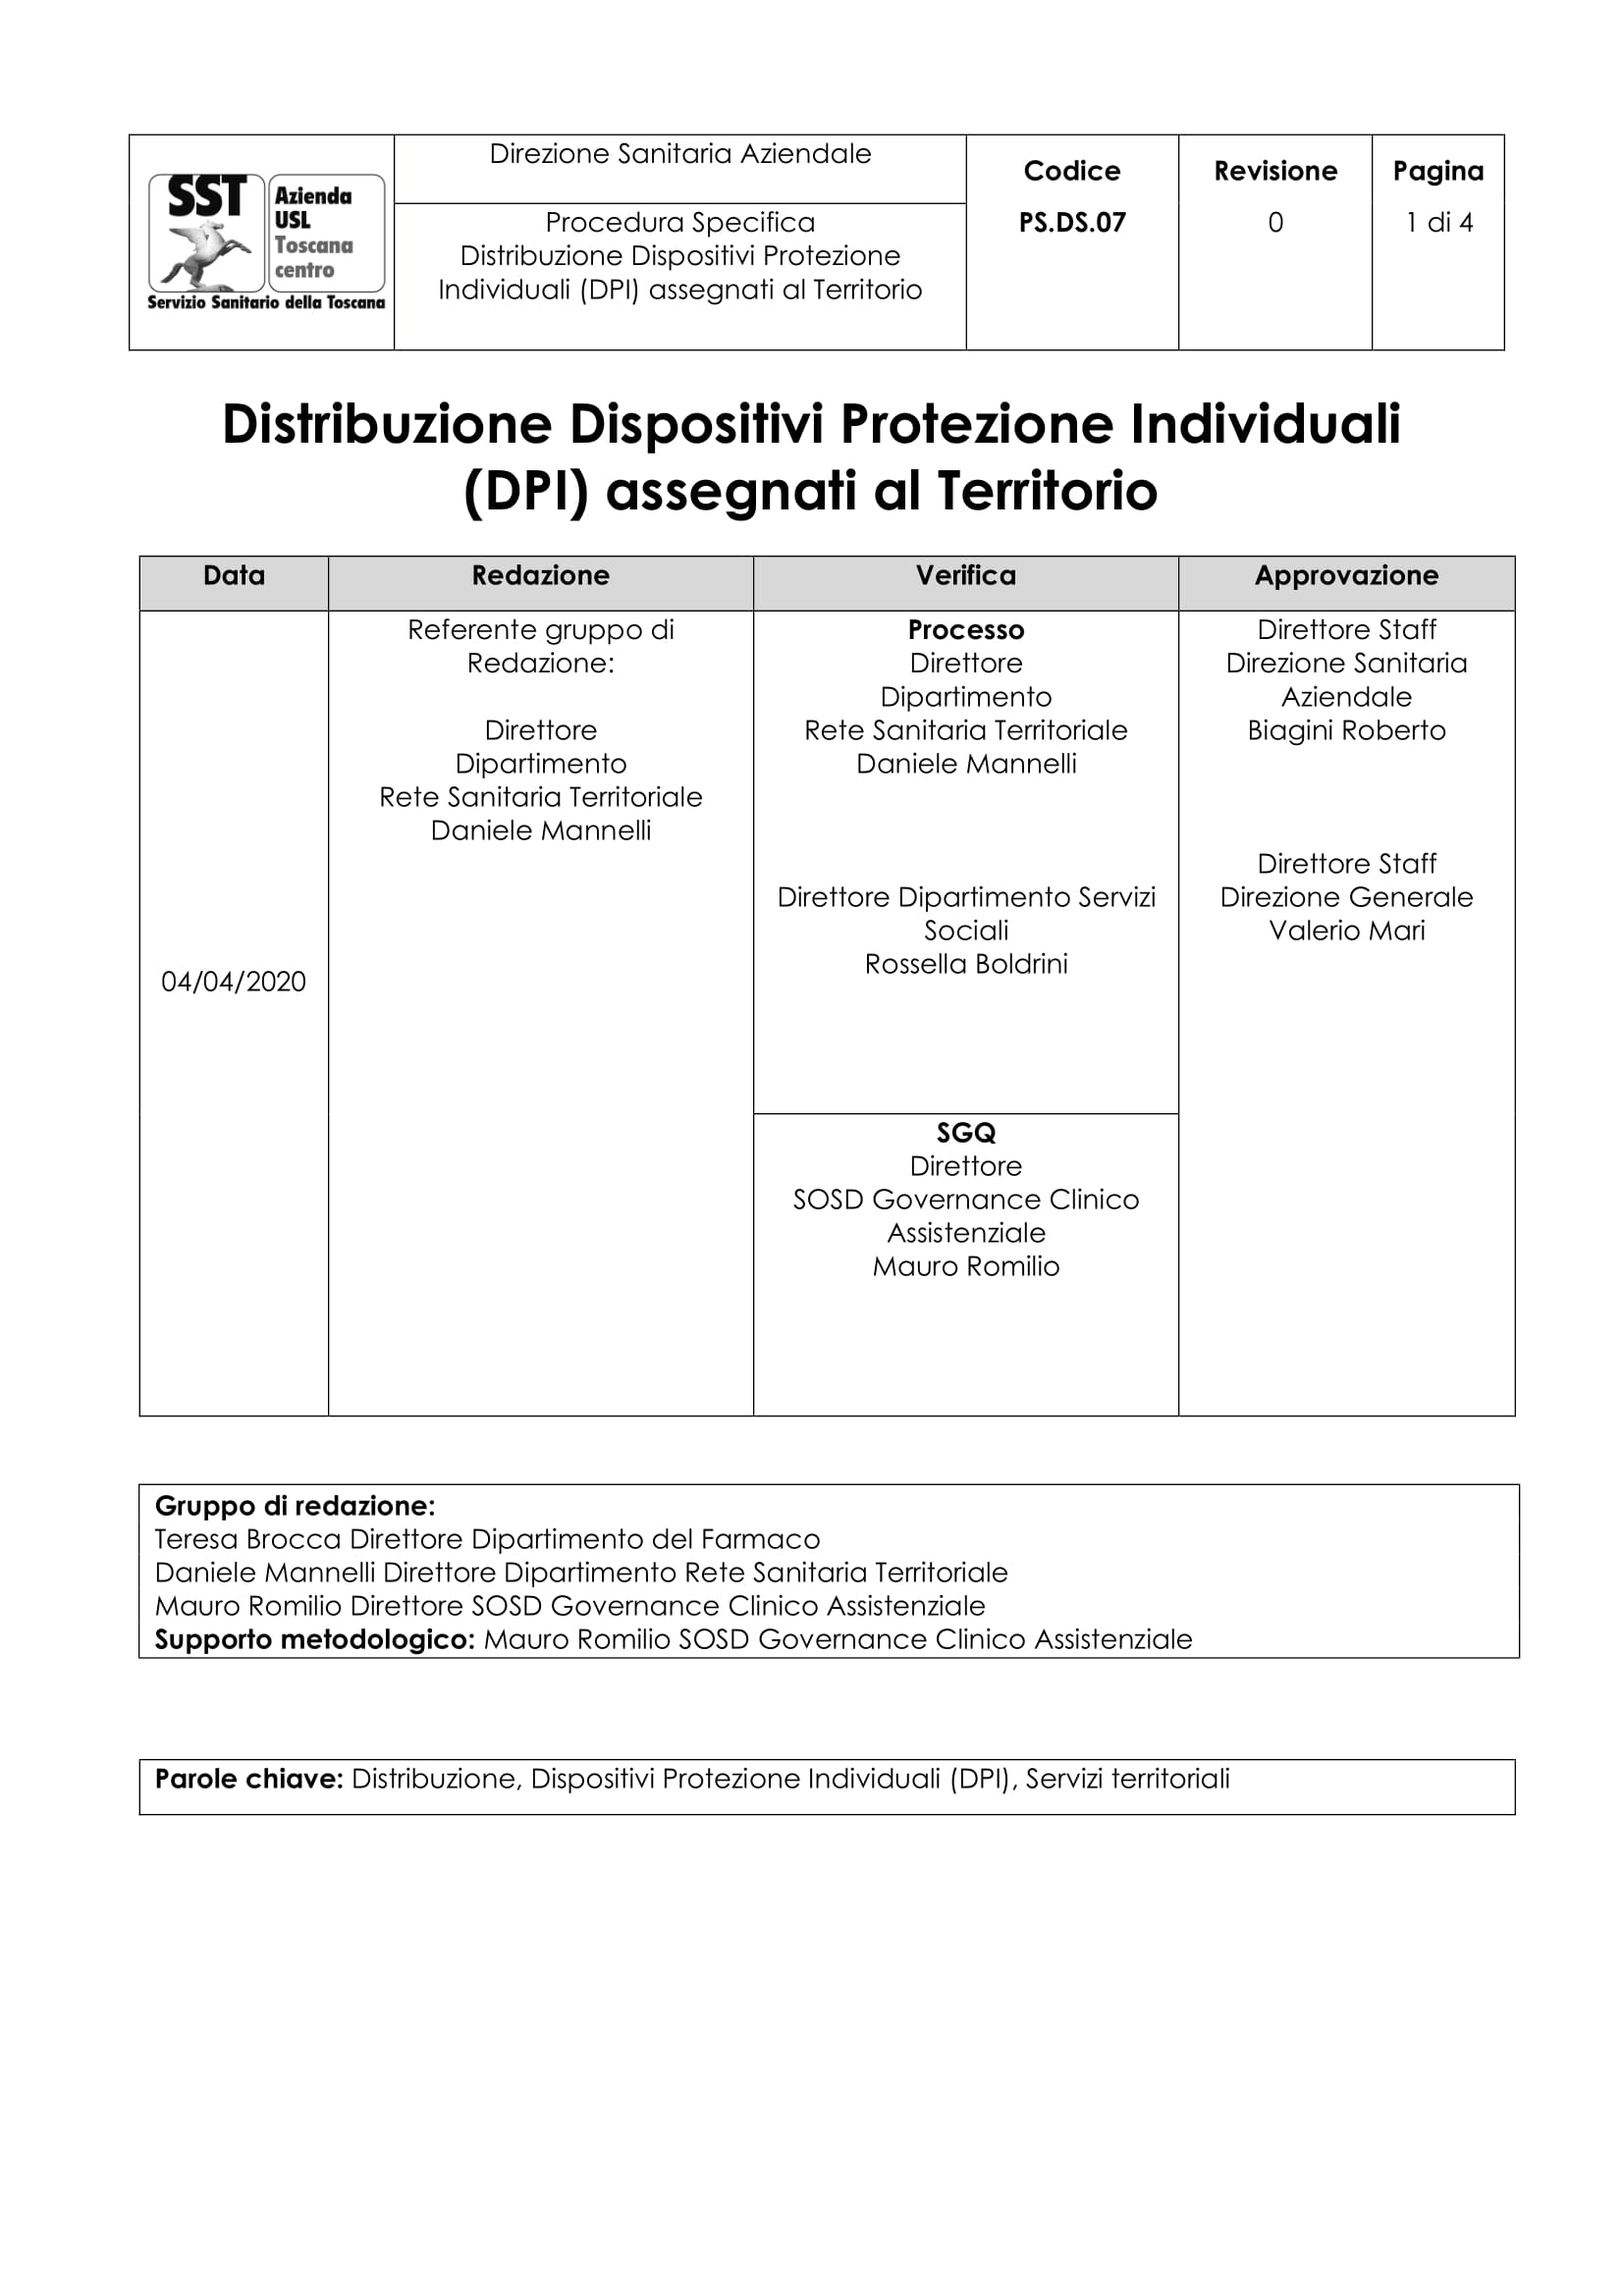 PS.DS.07 Distribuzione Dispositivi Protezione Individuali (DPI) assegnati al Territorio